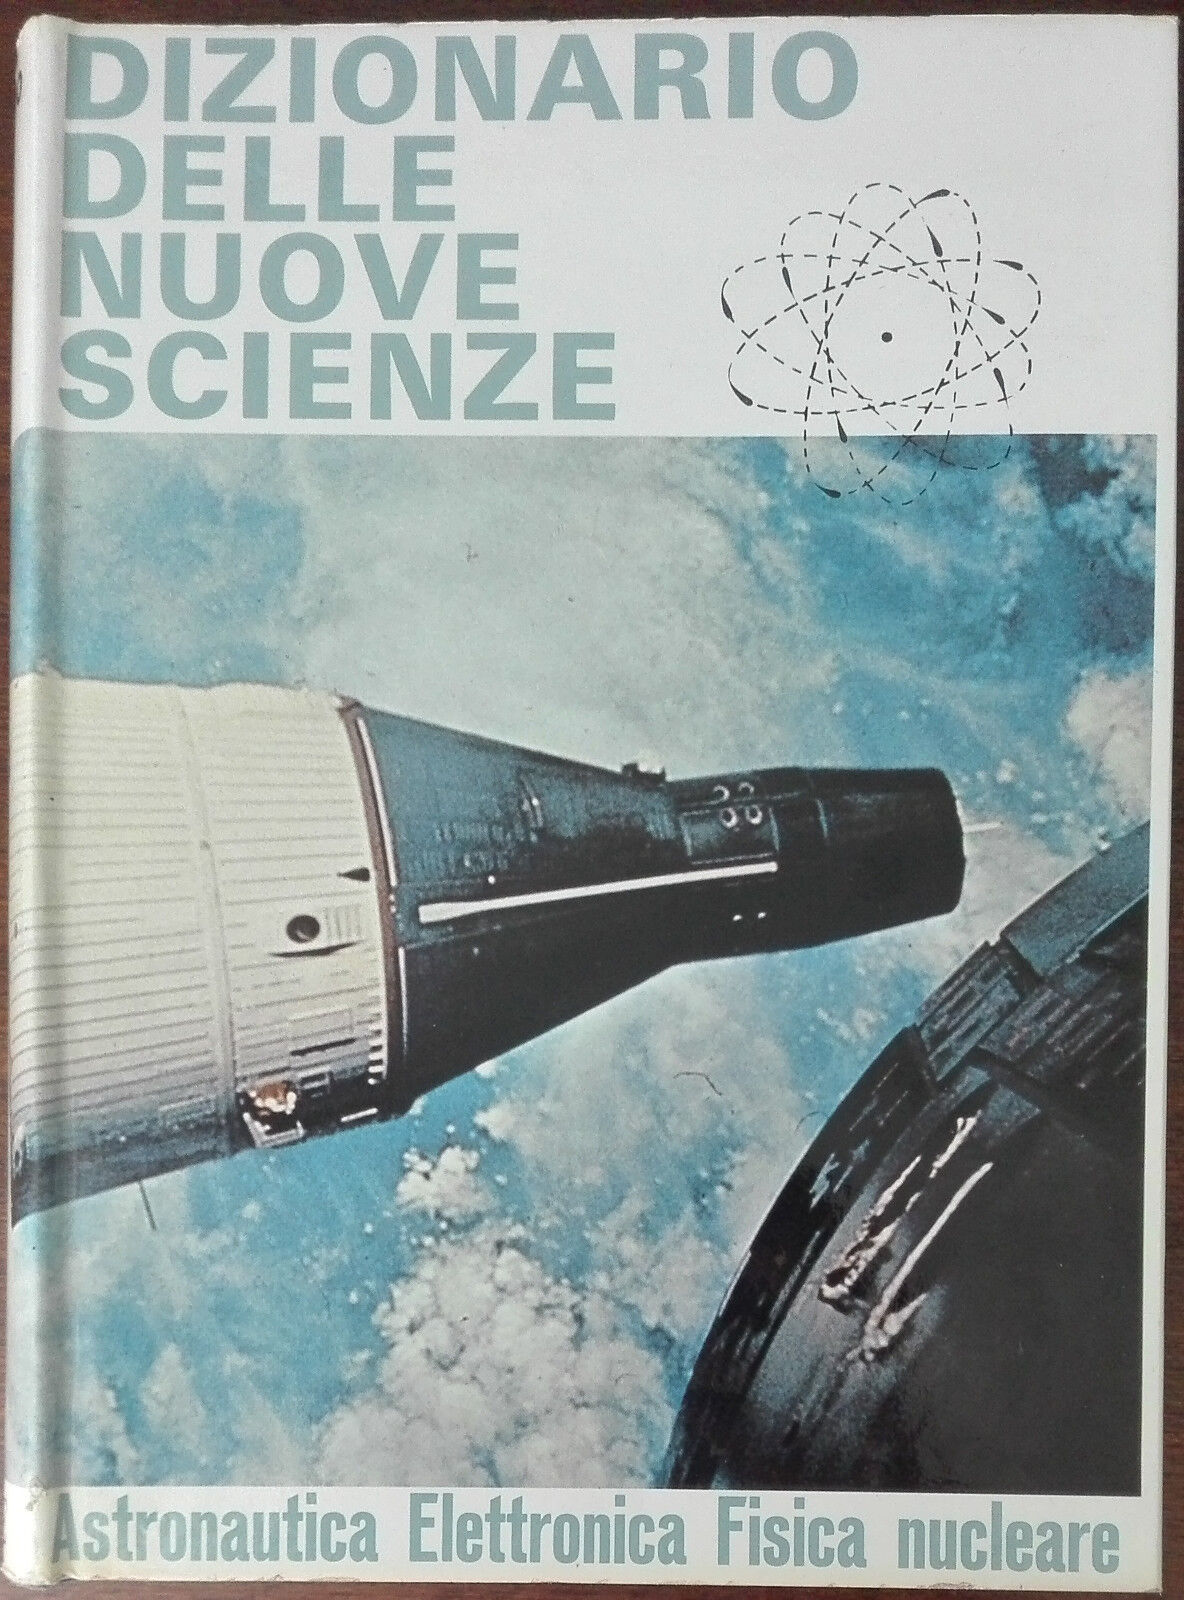 Dizionario delle nuove scienze - Castellani, Mazzaglia - E.P. Saie,1968 - A